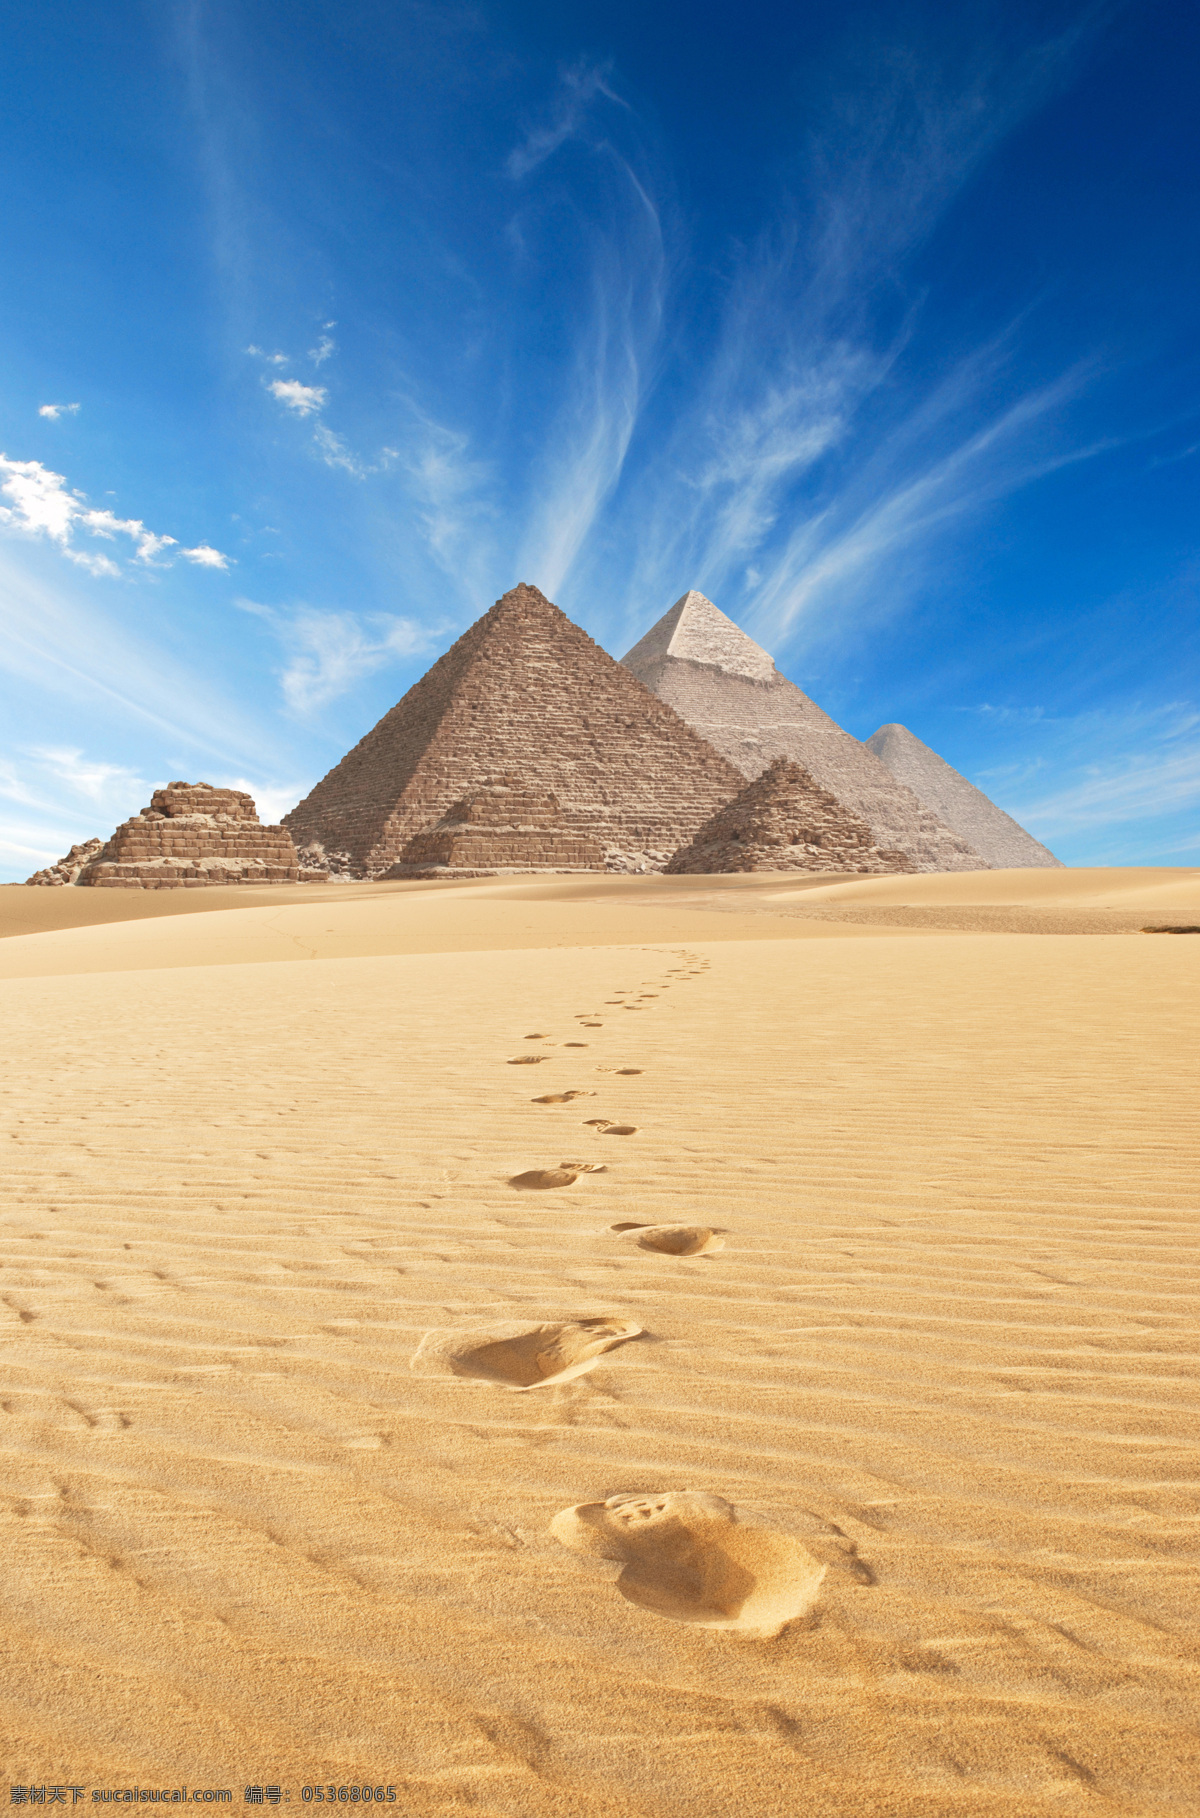 埃及金字塔 沙漠 蓝天 白云 古迹 人类文明 古埃及 胡夫金字塔 建筑园林 建筑摄影